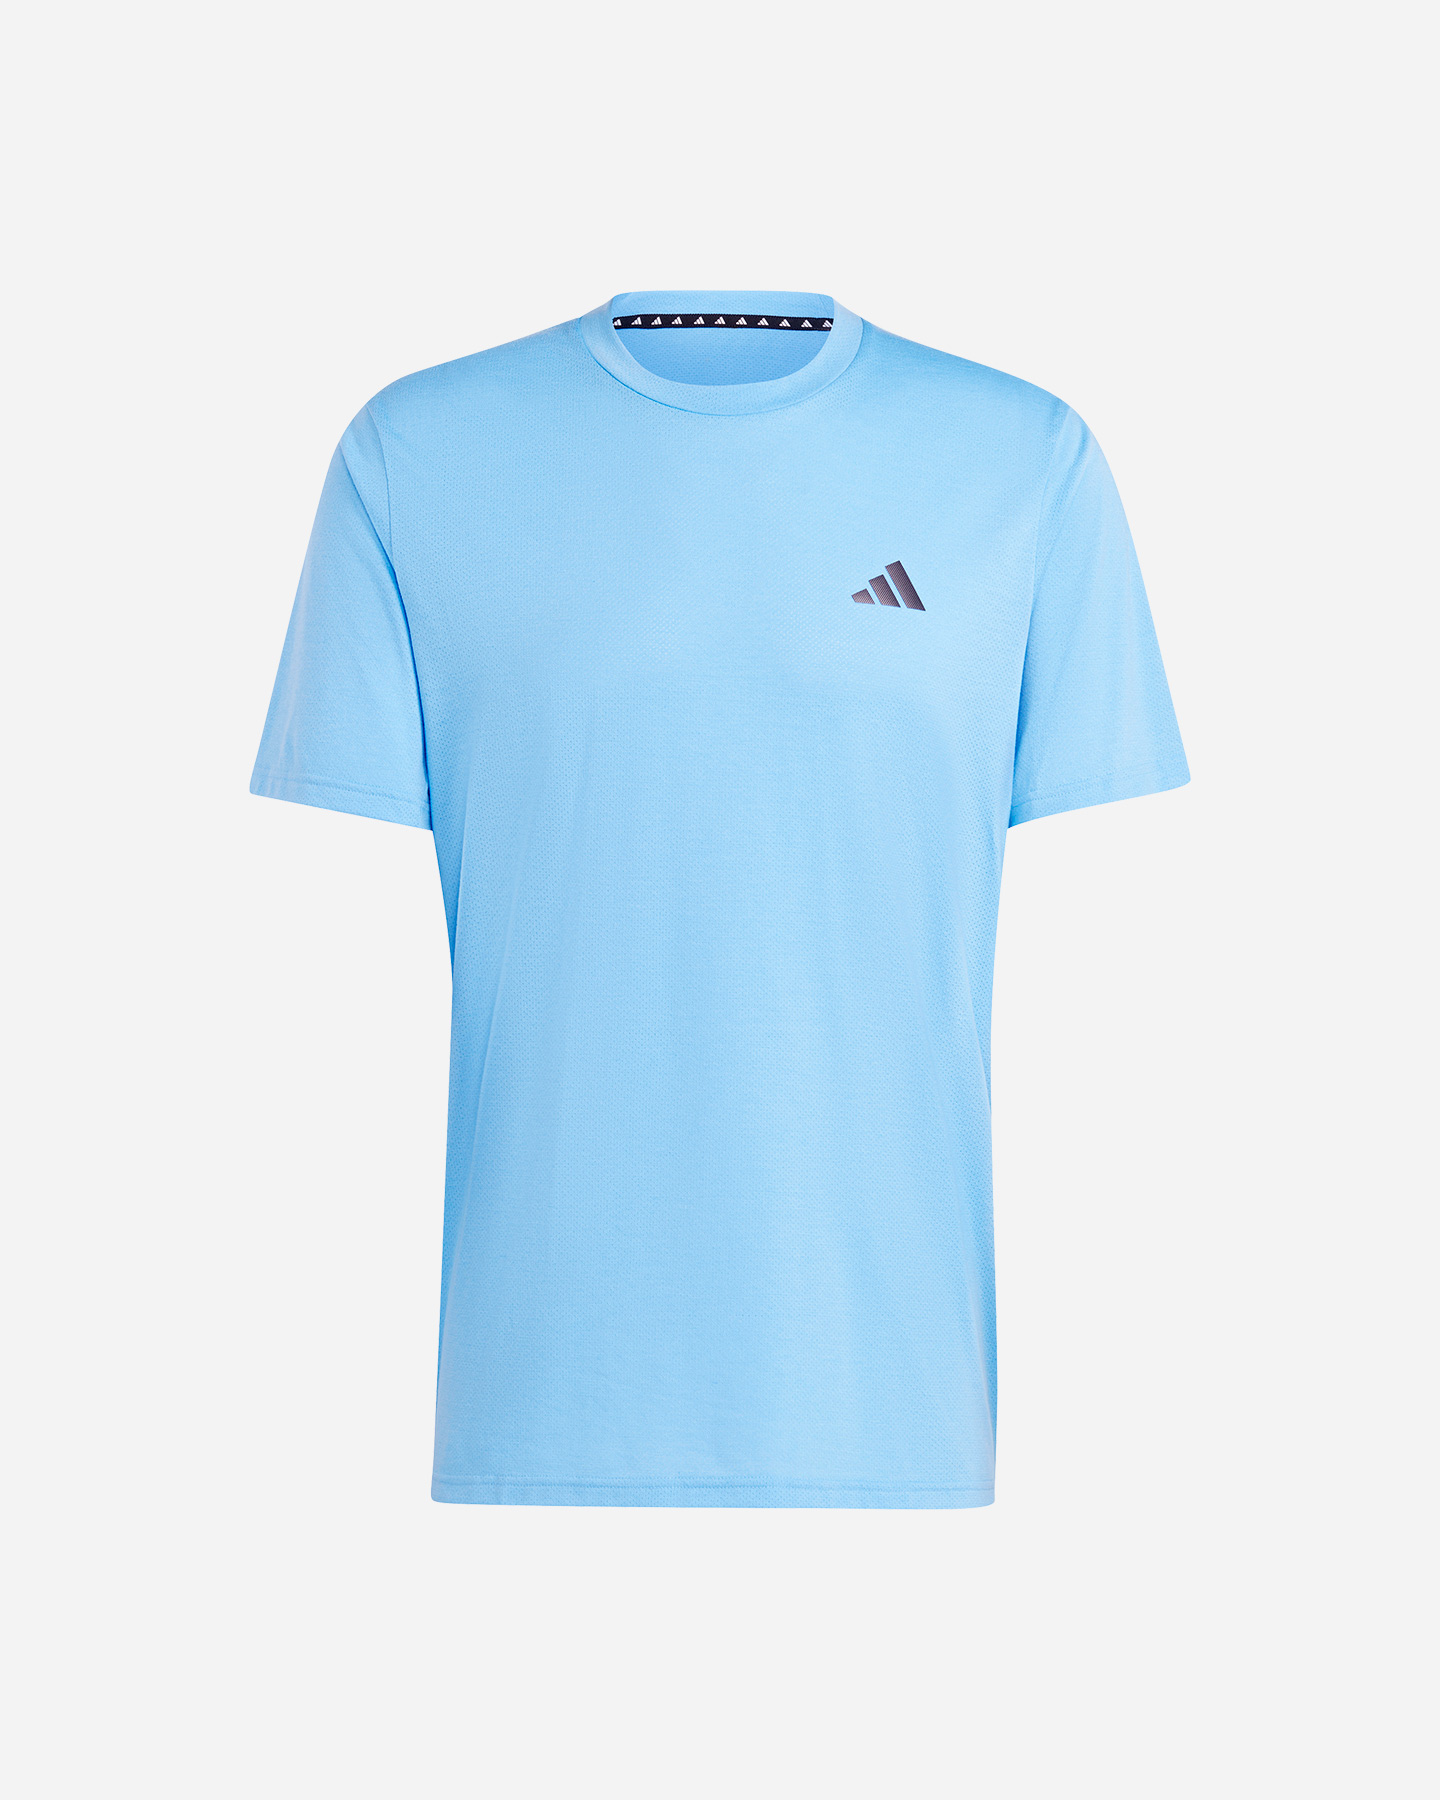 Image of Adidas Training M - T-shirt Training - Uomo